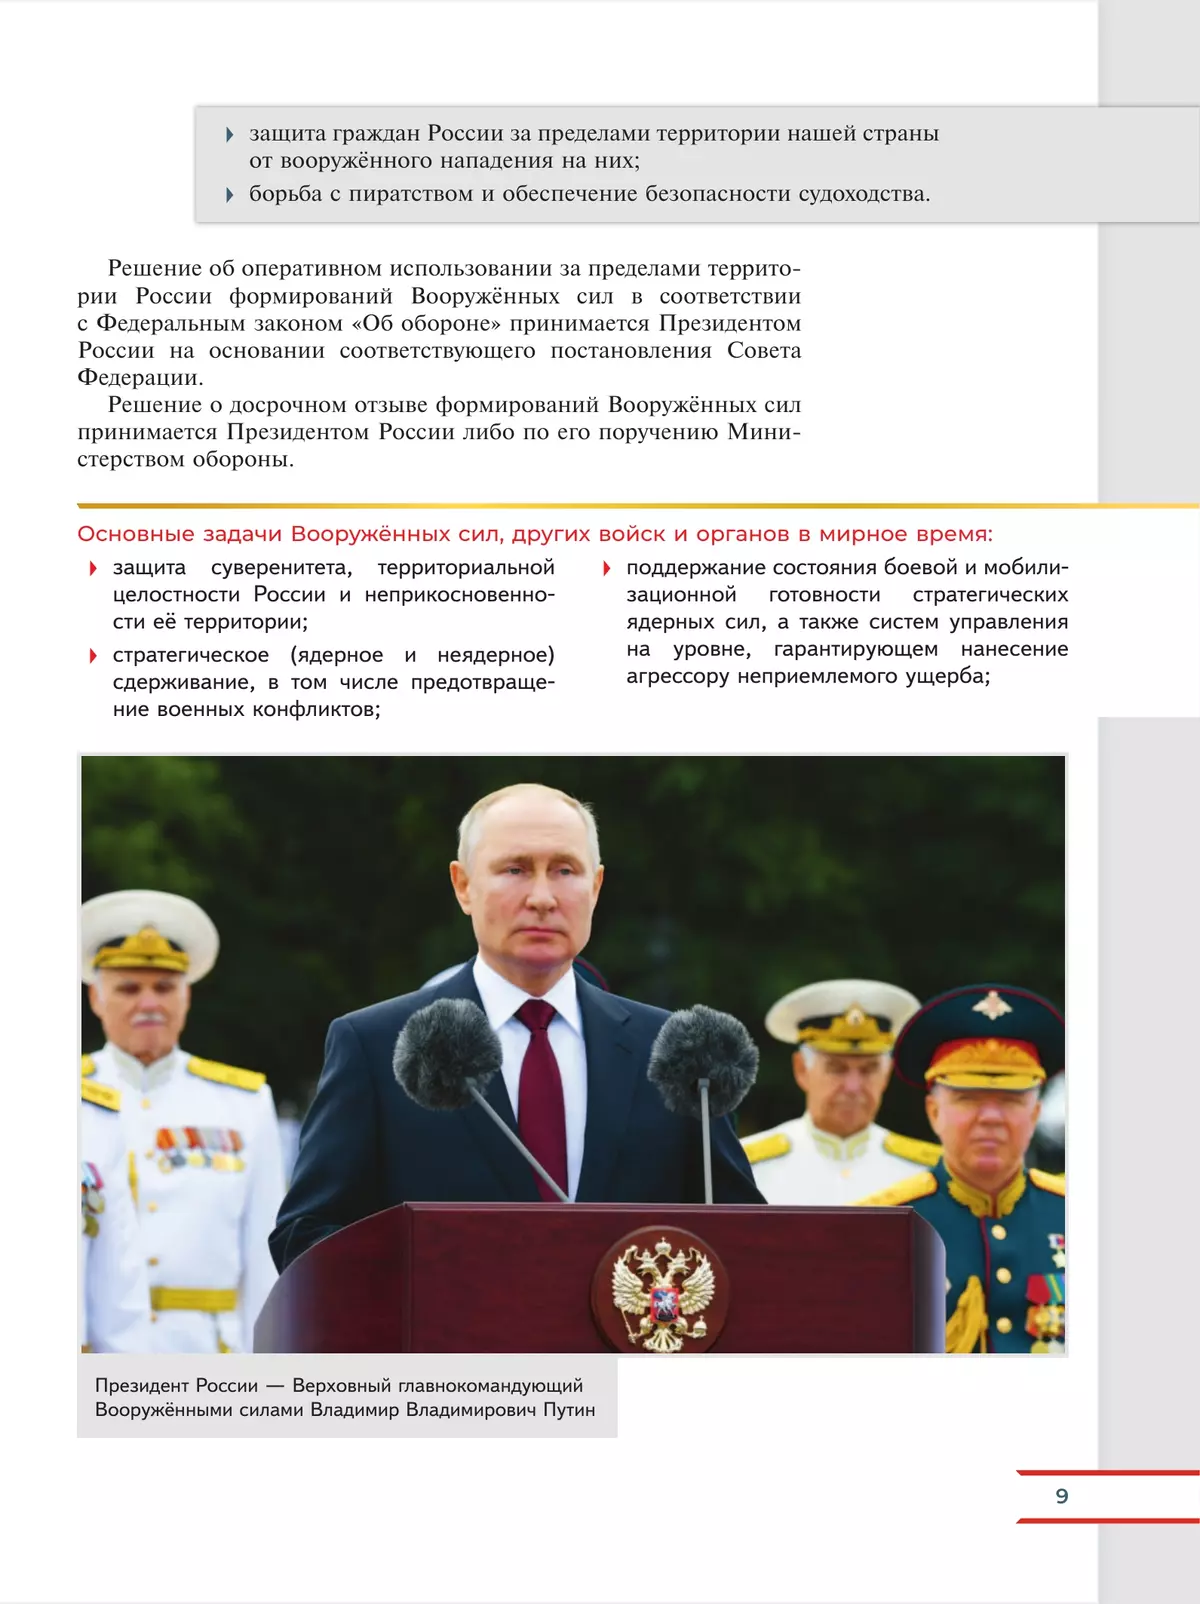 Армия России на защите Отечества. Книга для учащихся 7